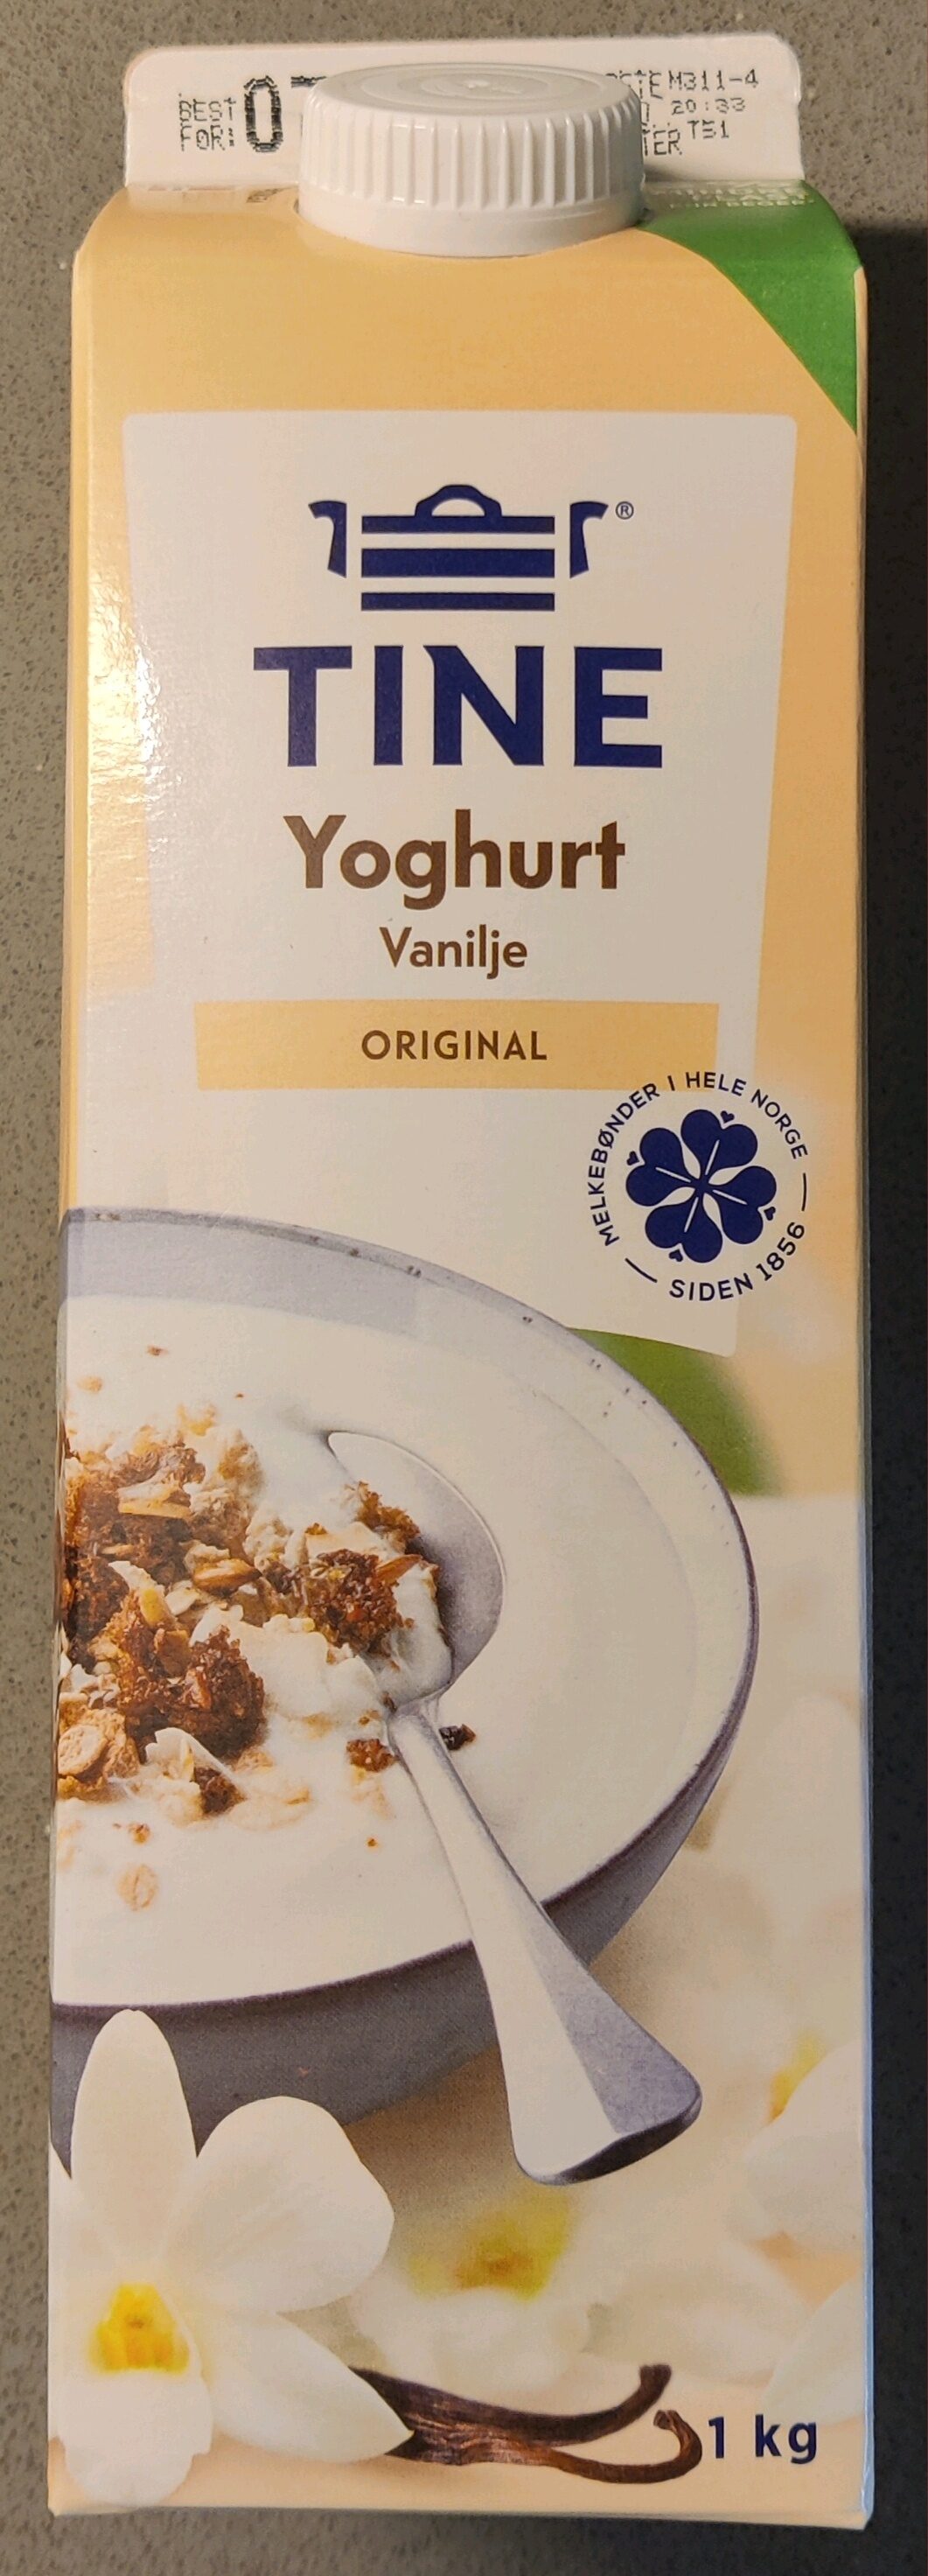 Yoghurt Vanilje - Produkt - en